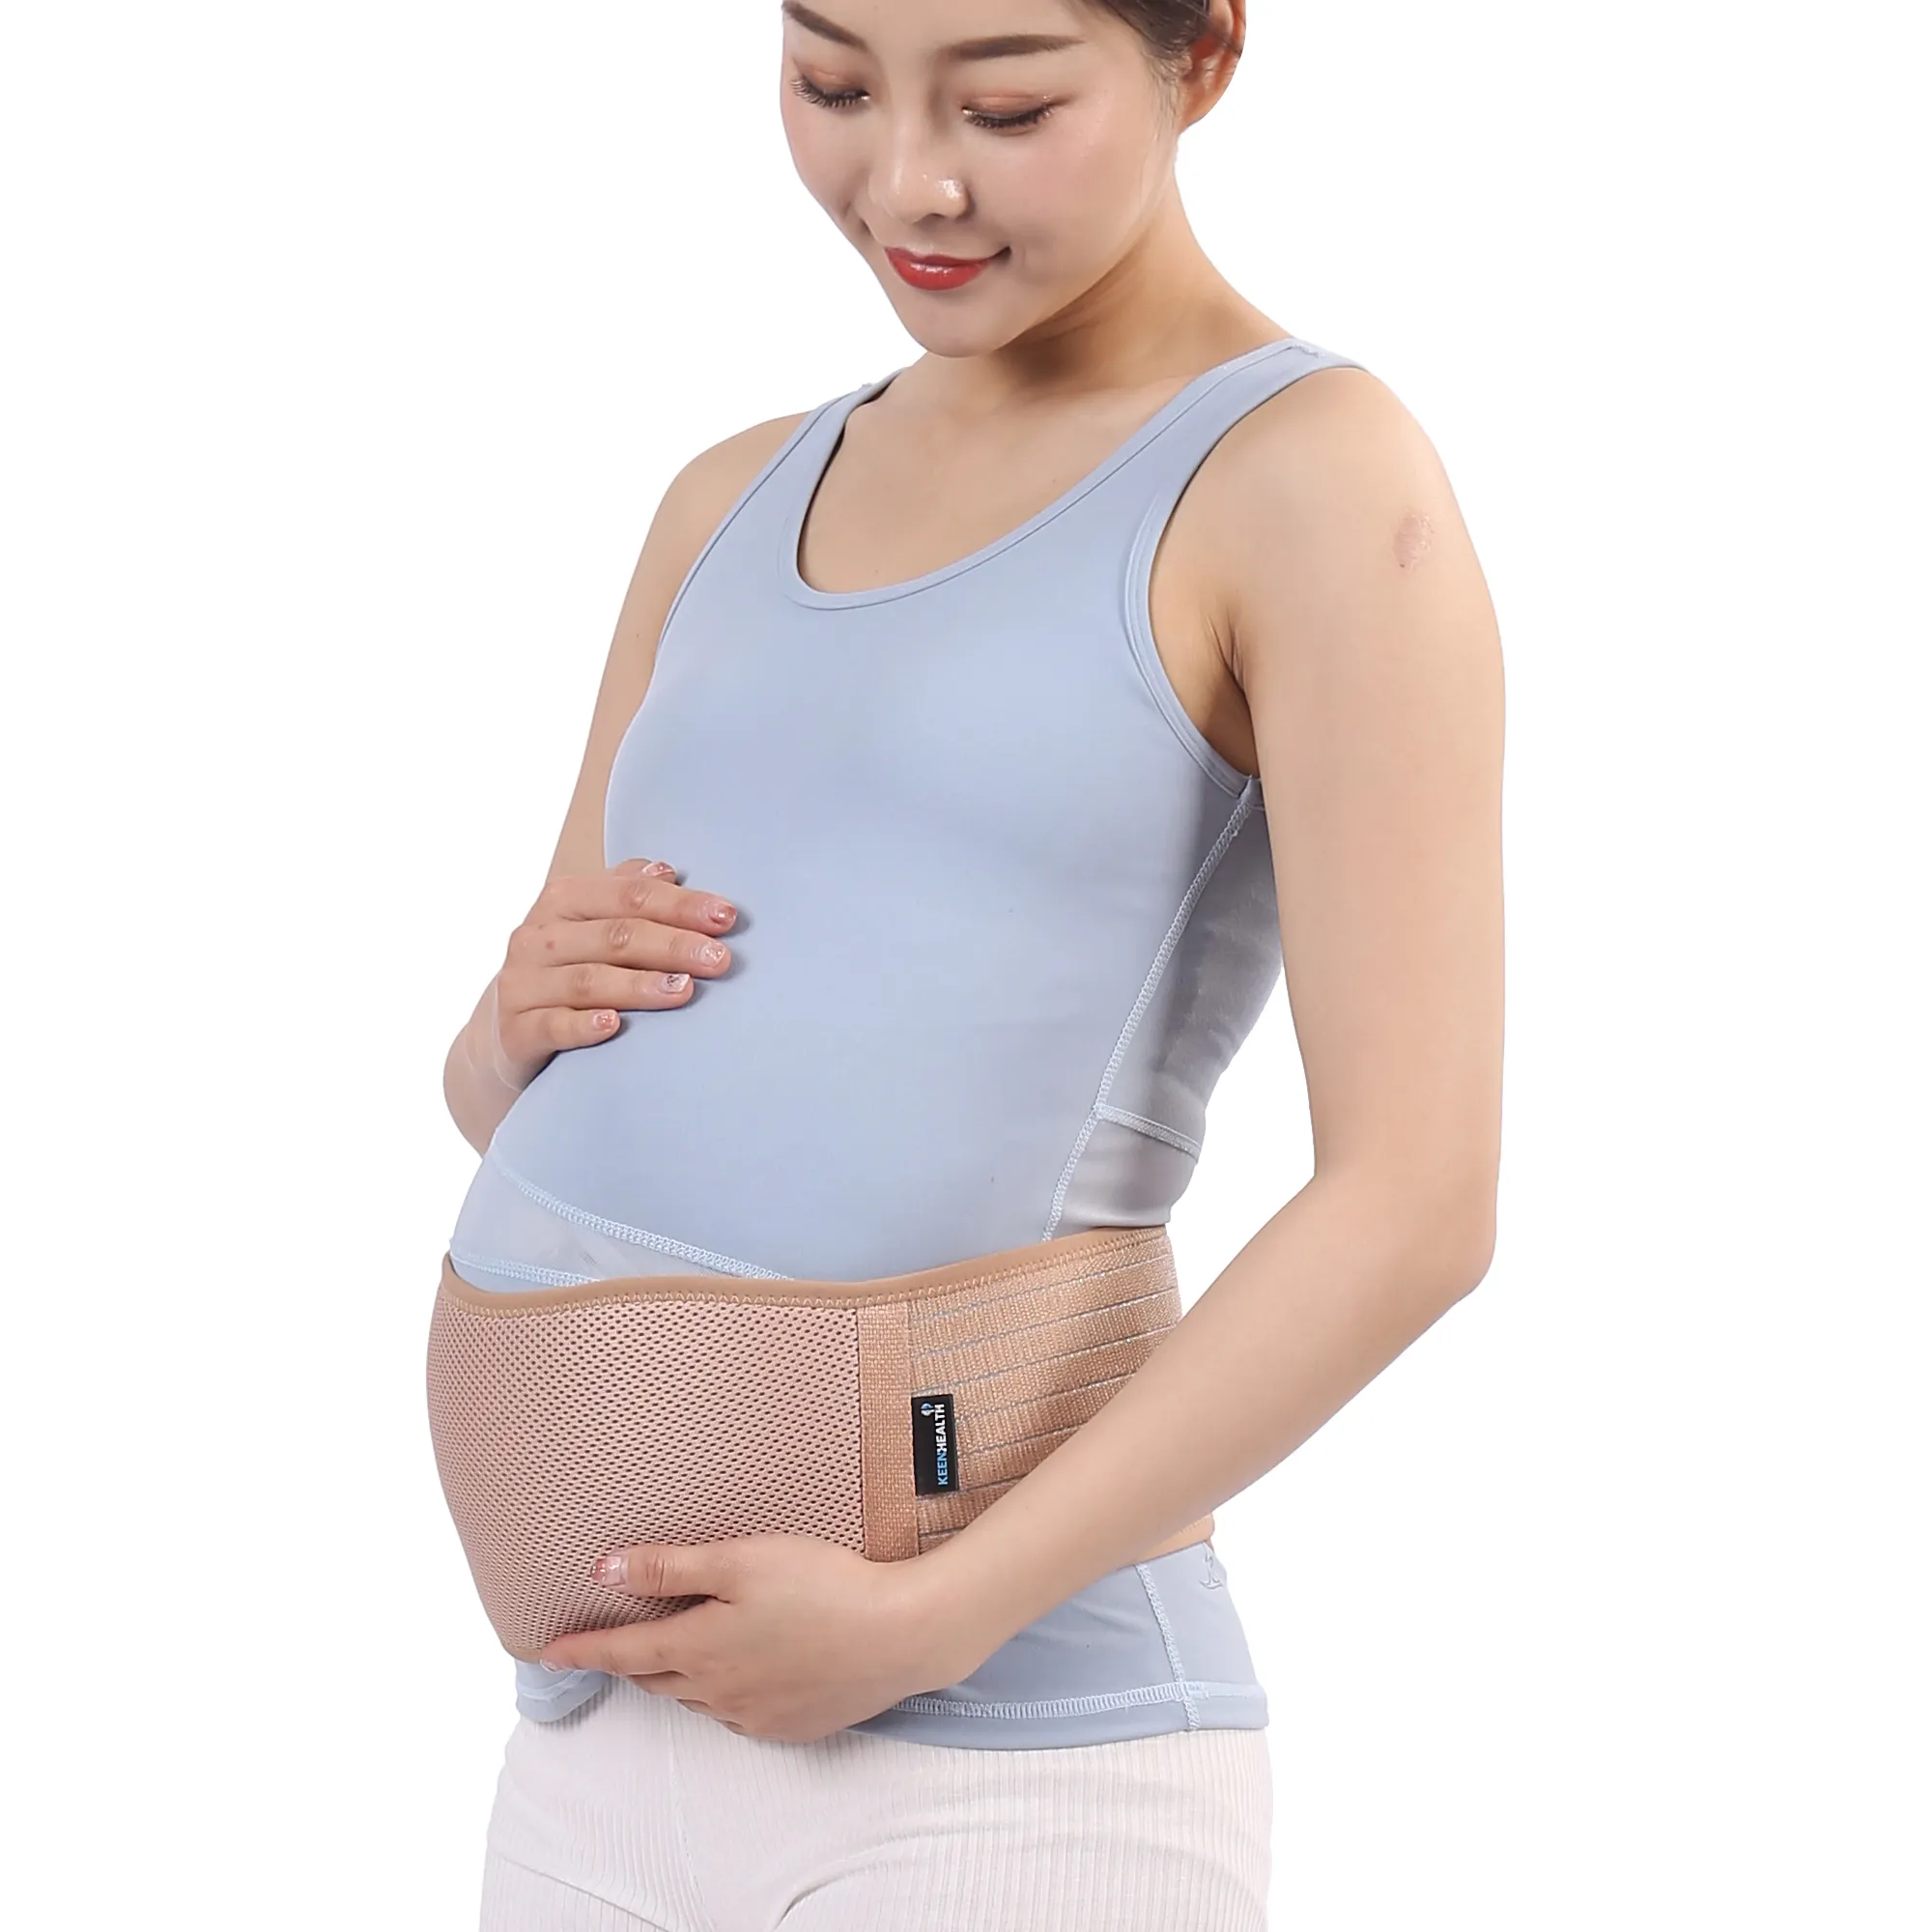 Satılık hamilelik için sağlık ürünleri annelik karın desteği hamile hamile bel destek bandı bant